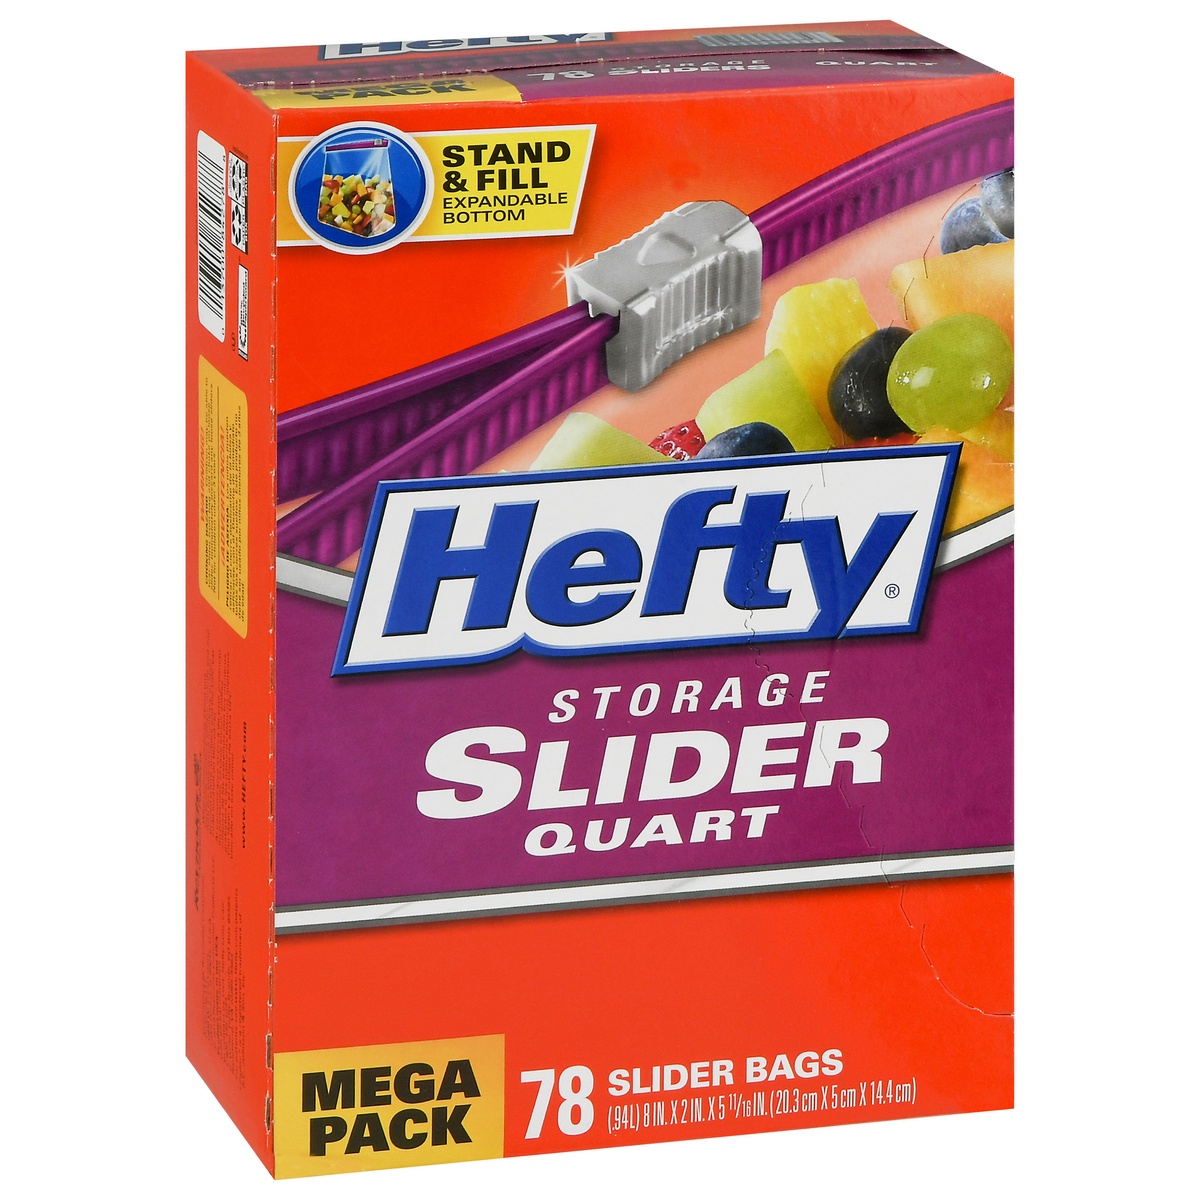 slide 9 of 9, Hefty Quart Size Storage Slider Bags, 78 ct